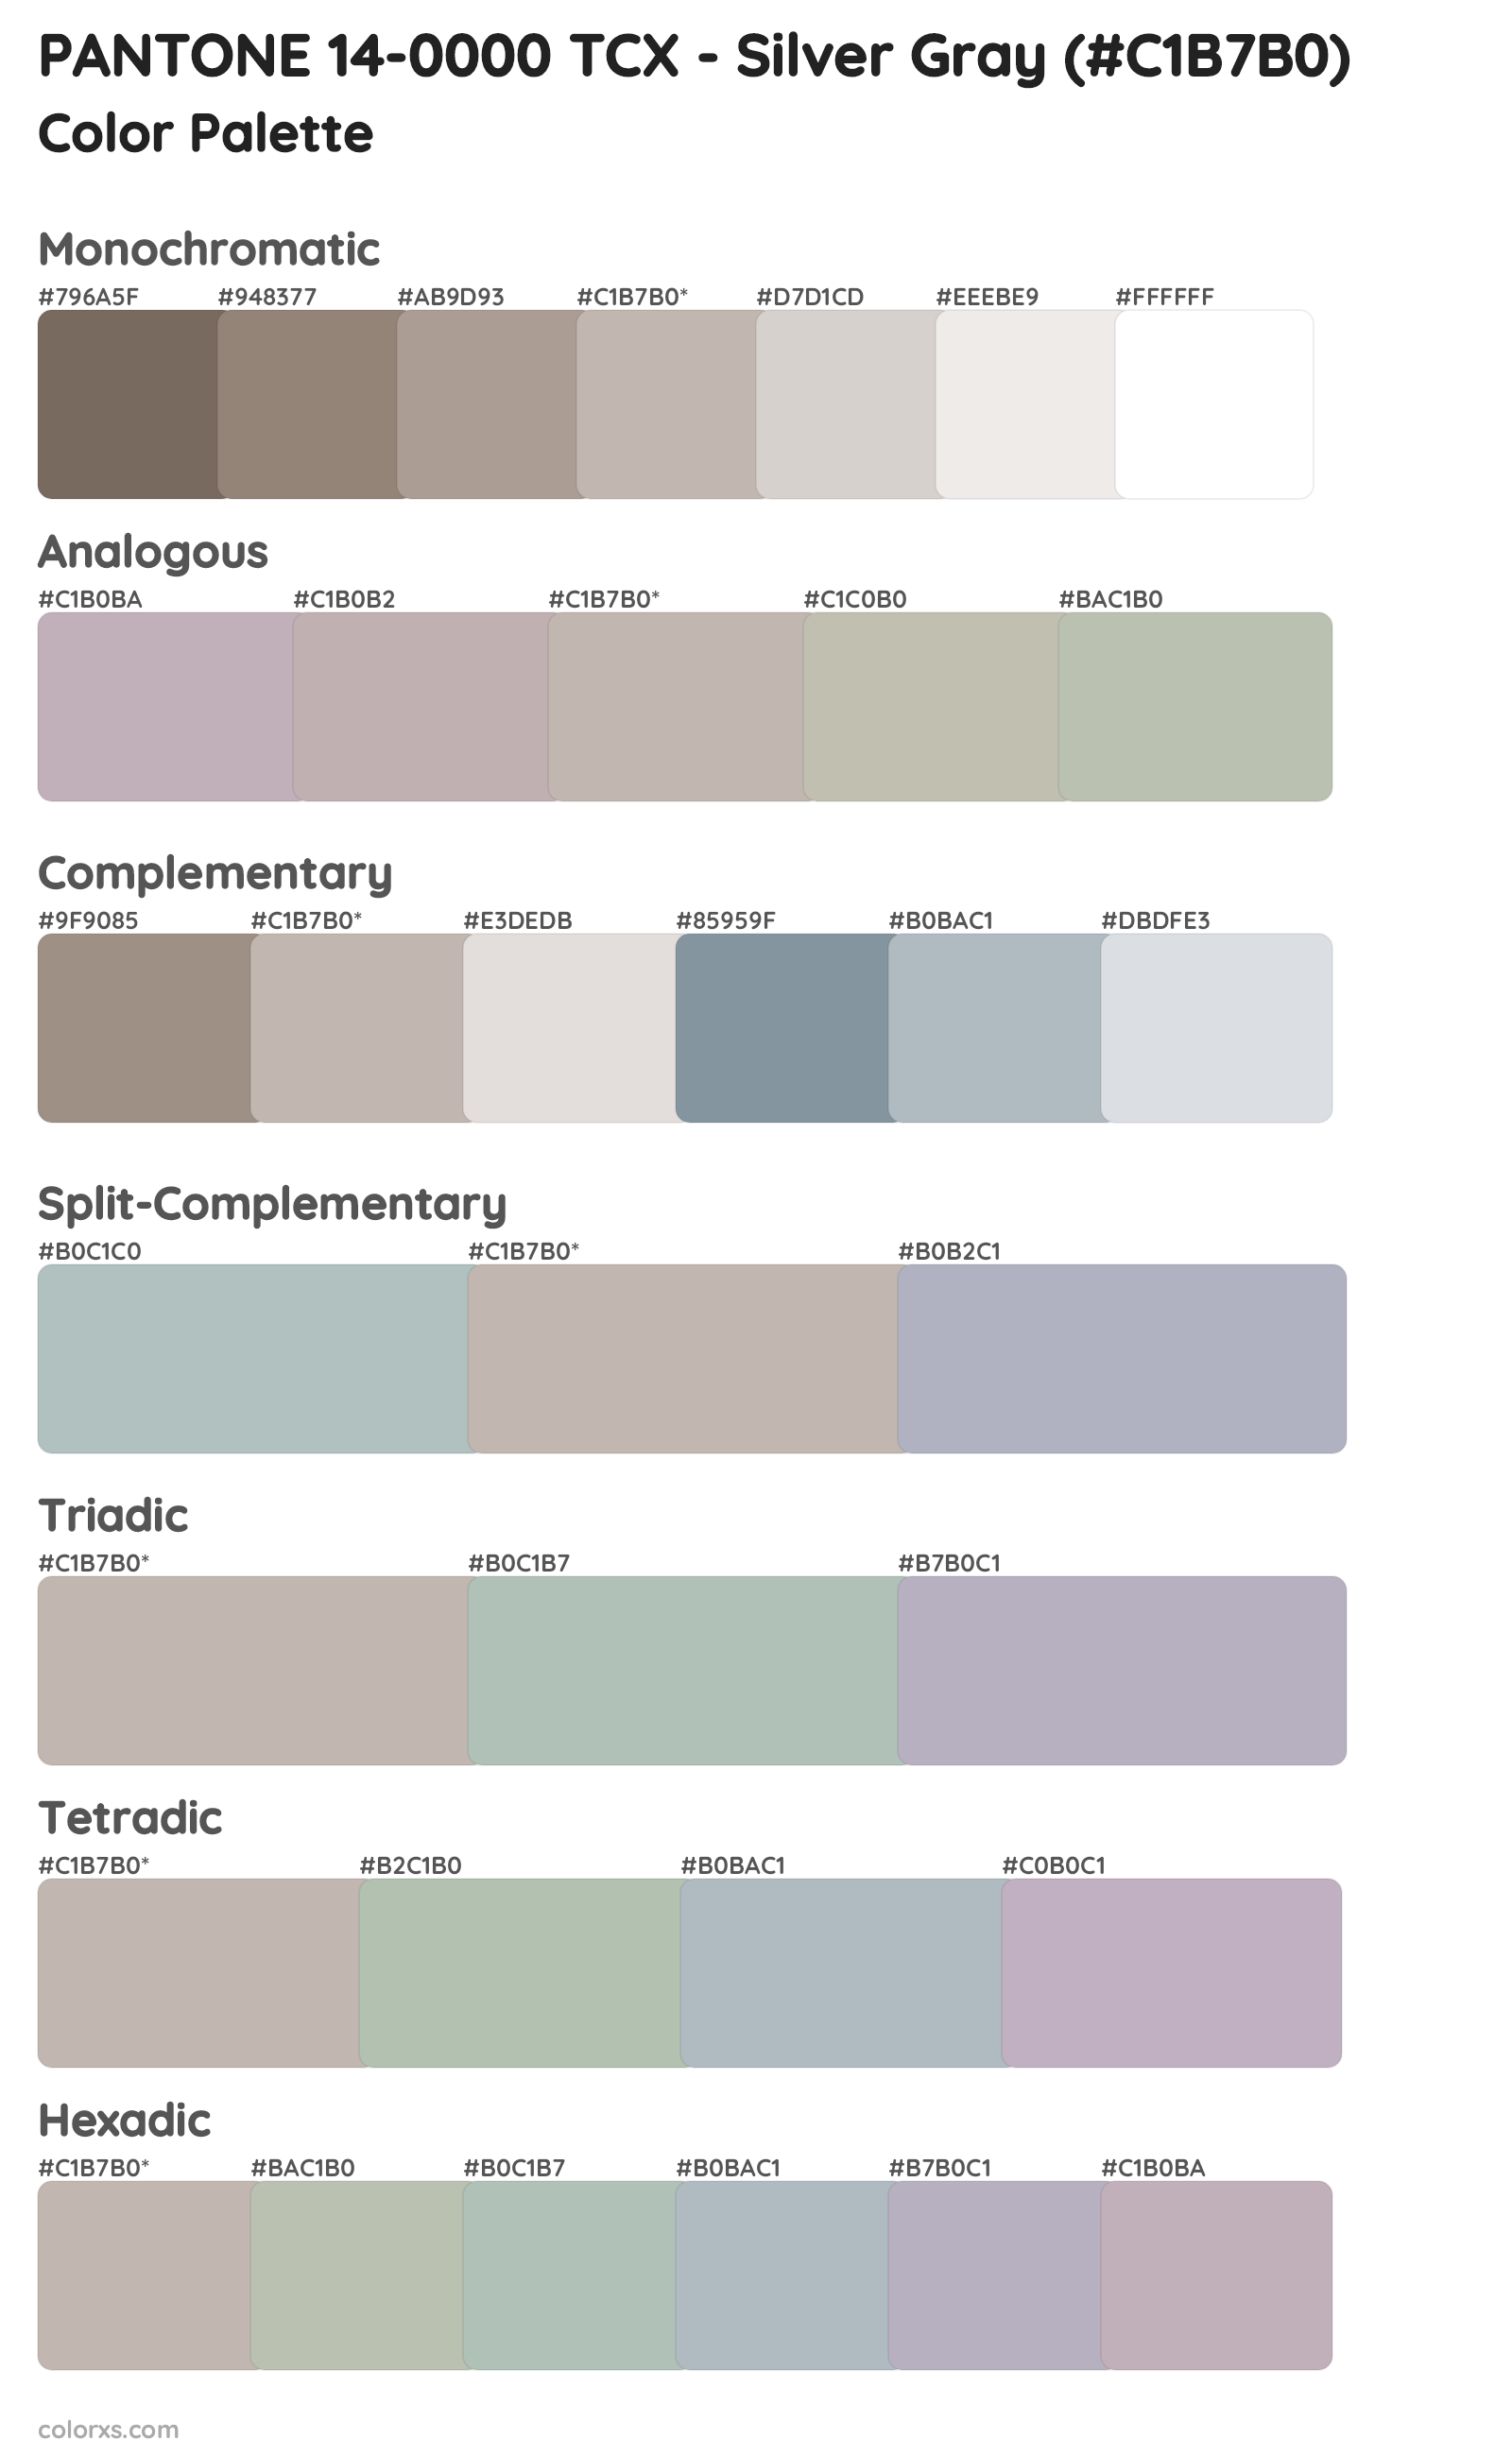 PANTONE 14-0000 TCX - Silver Gray Color Scheme Palettes